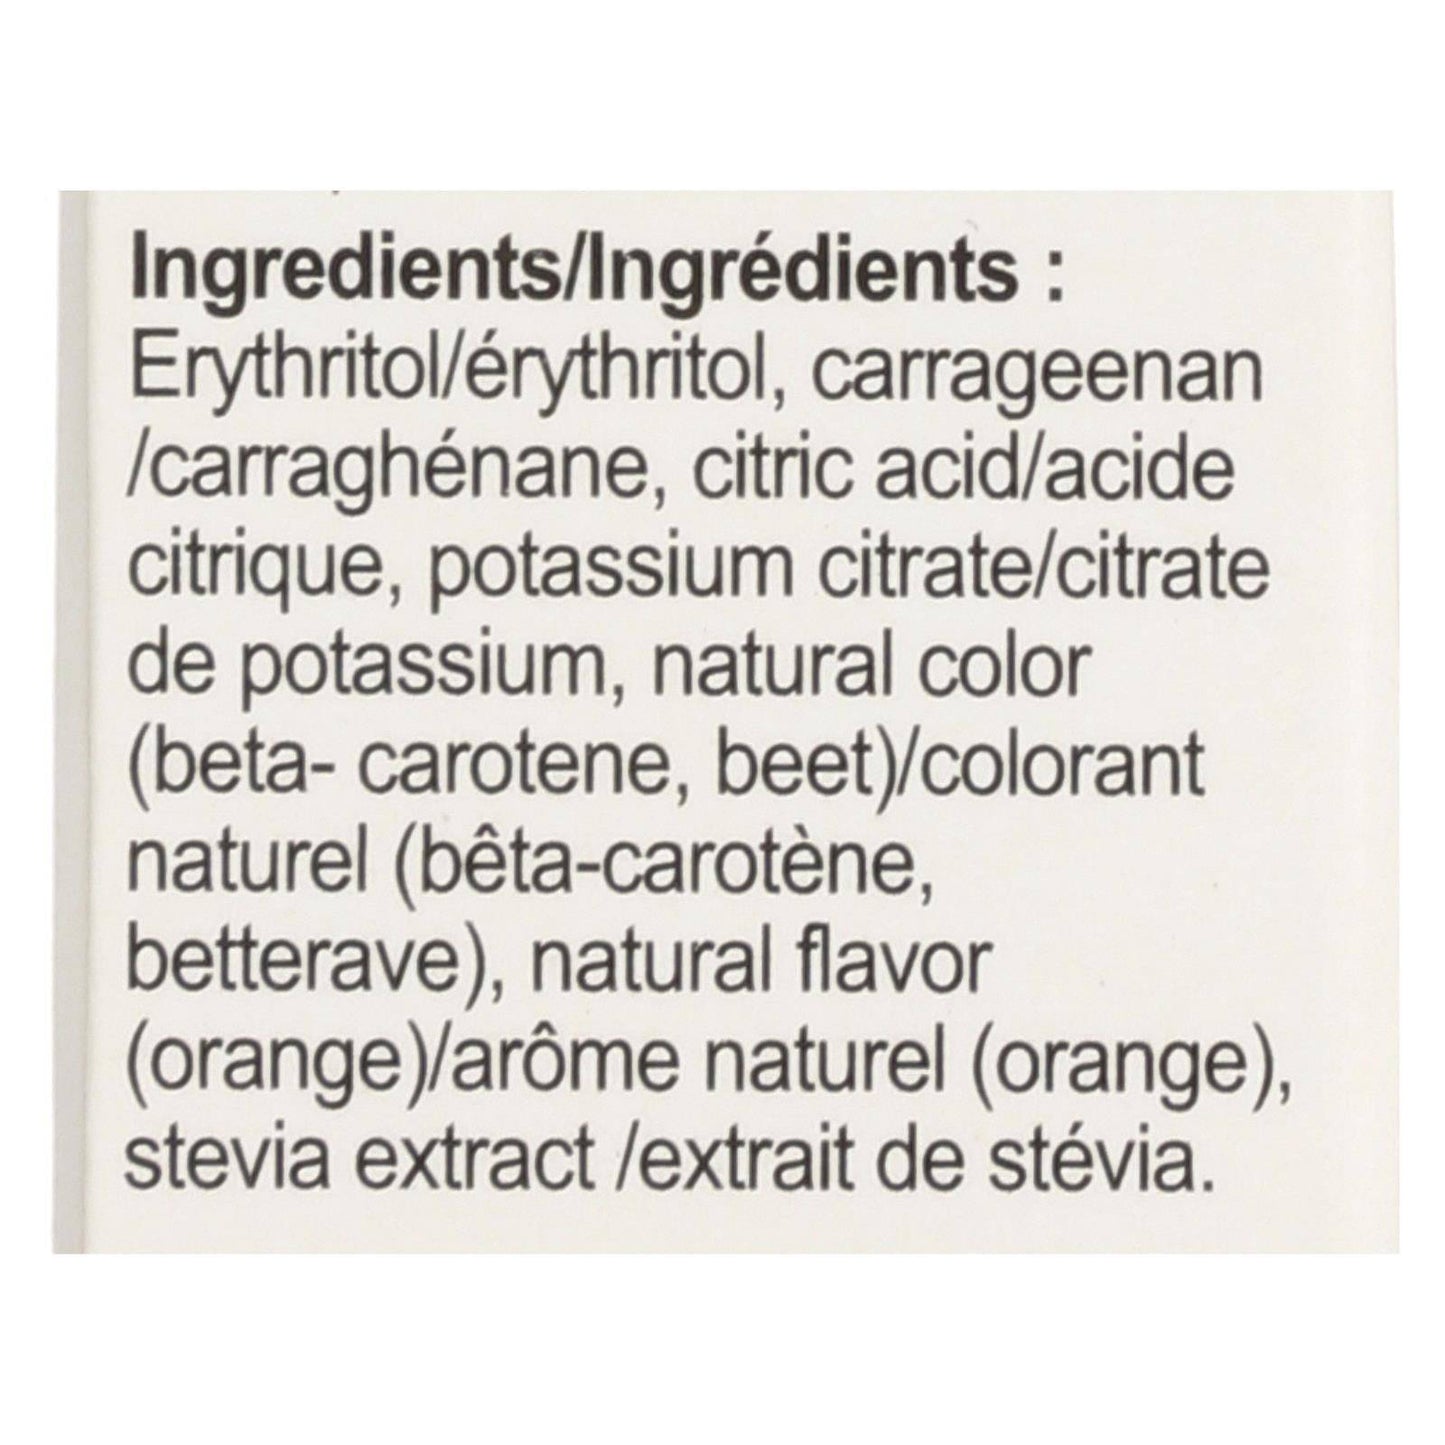 Buy Simply Delish Natural Jel Dessert - Orange - Case Of 6 - 1.6 Oz.  at OnlyNaturals.us